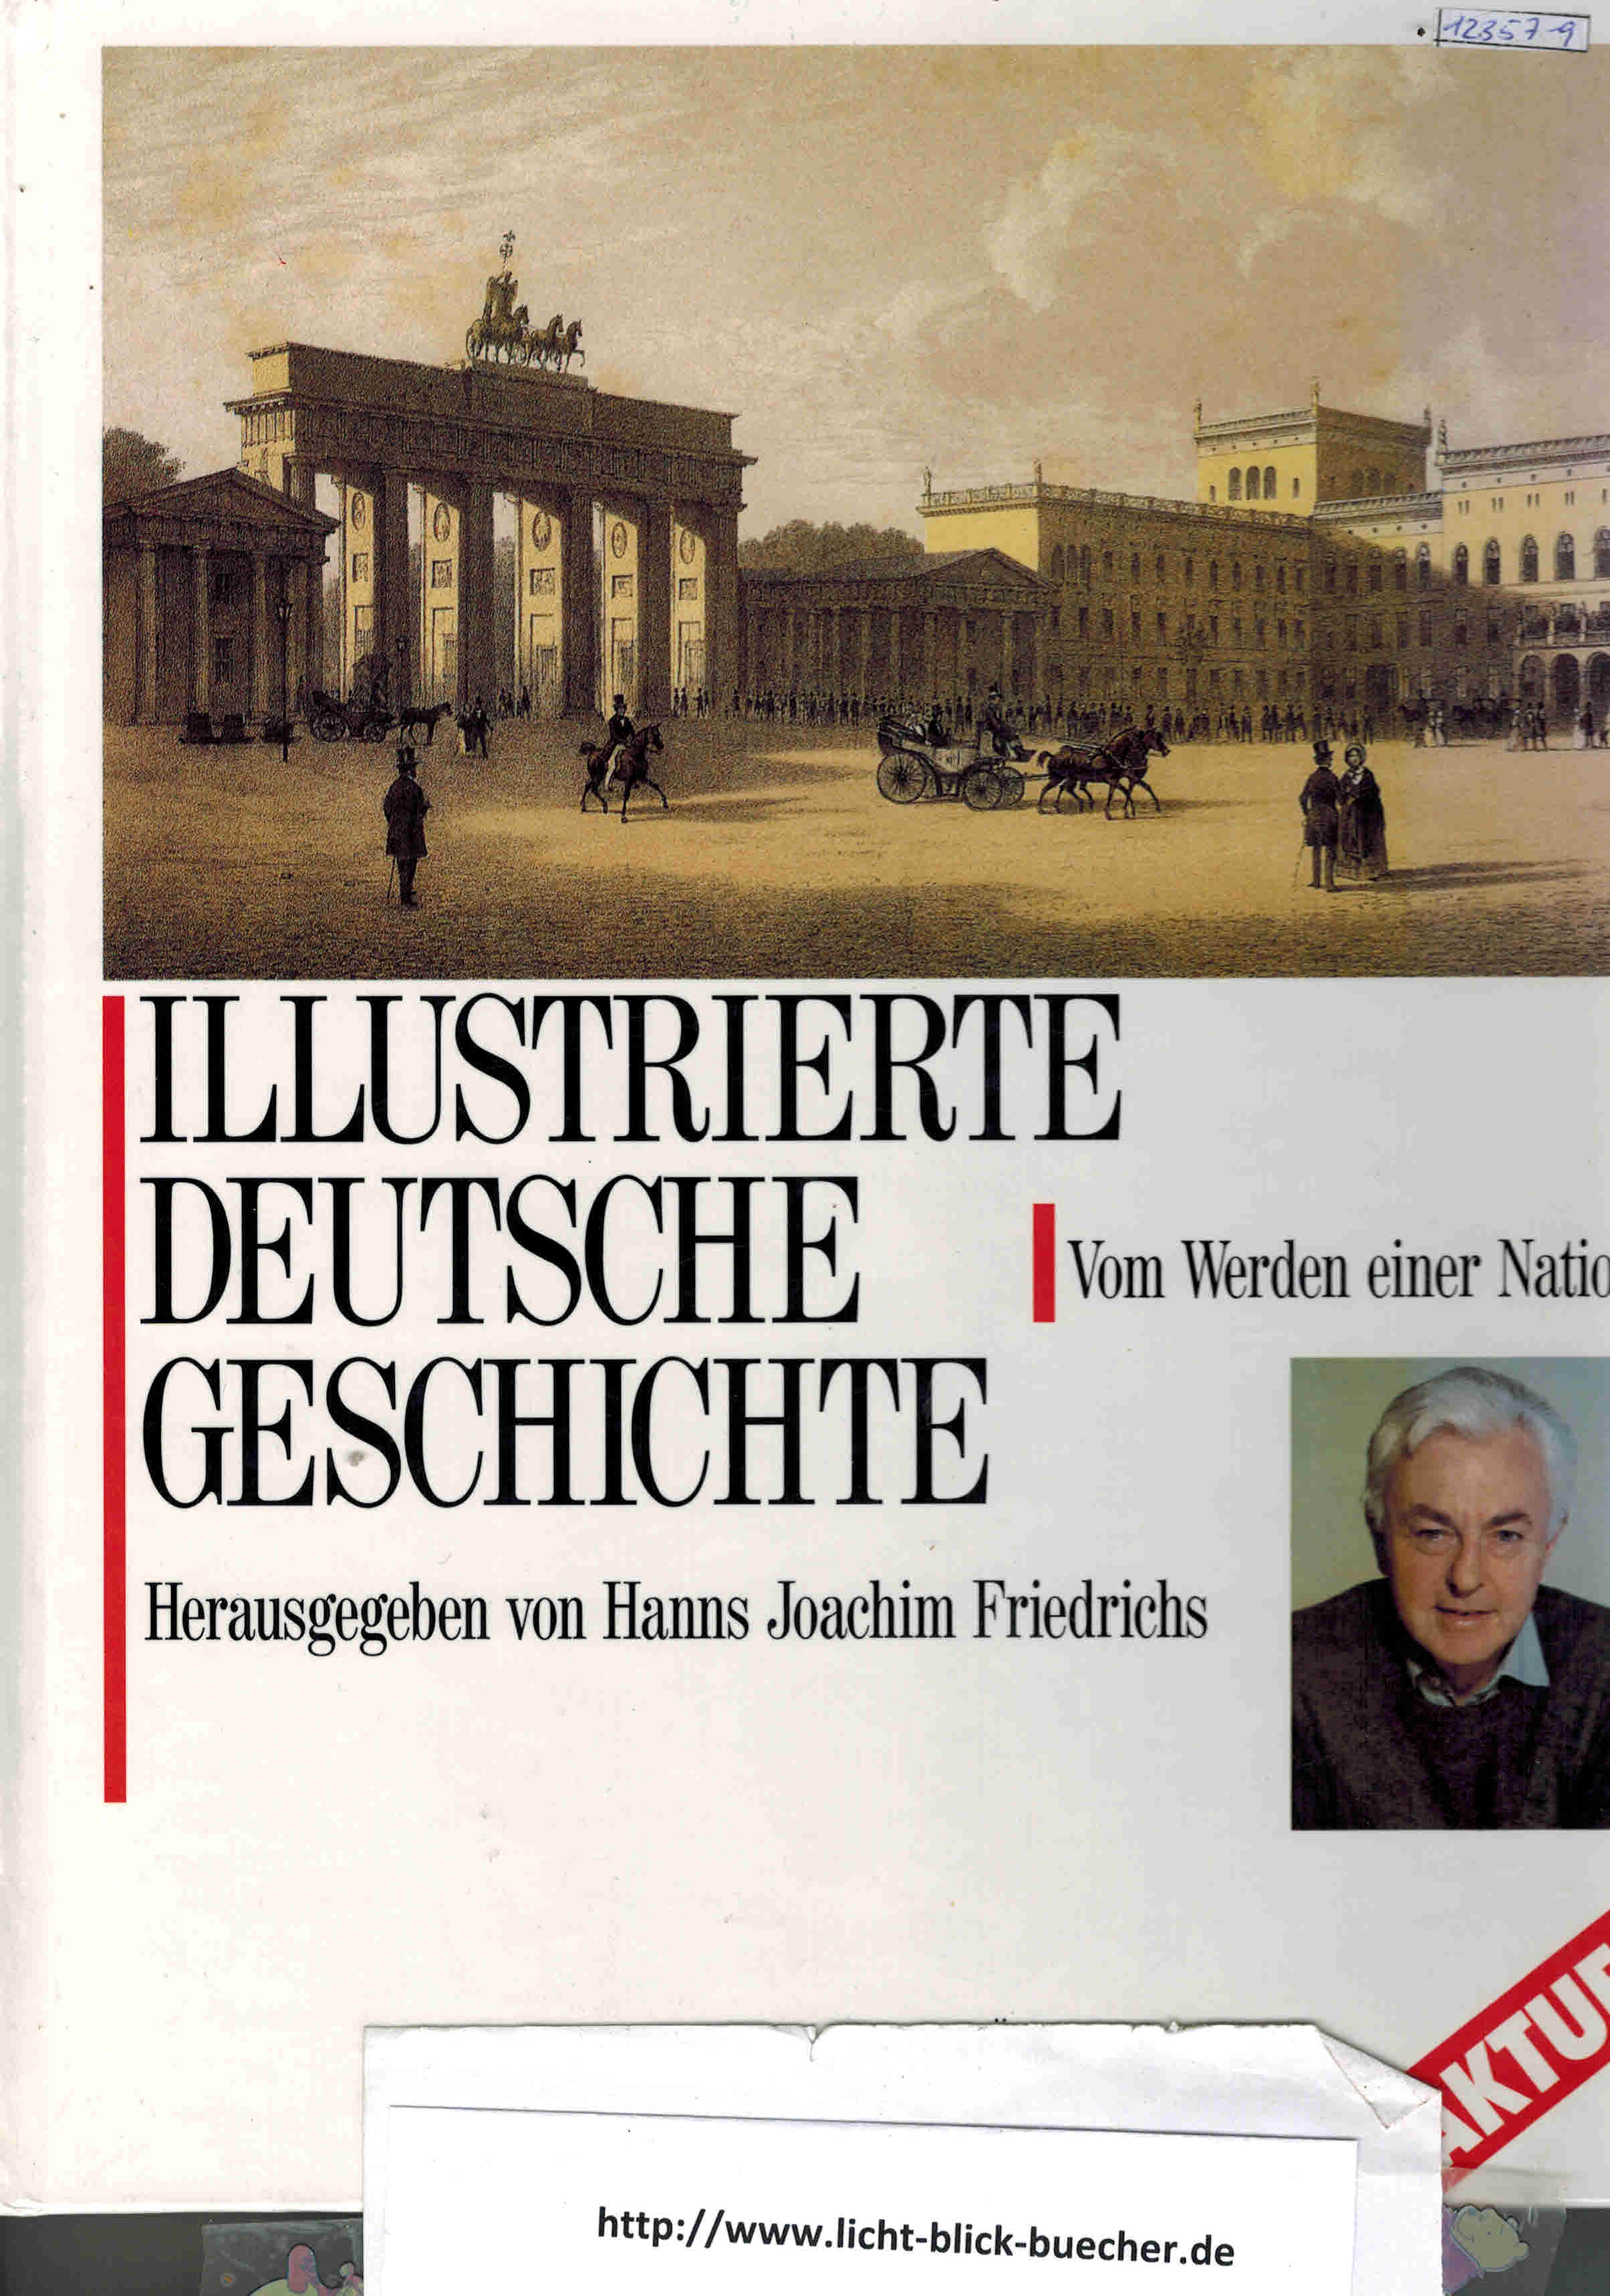 Illustrierte Deutsche Geschichteherausgegeben von Hanns Joachim Friedrichs